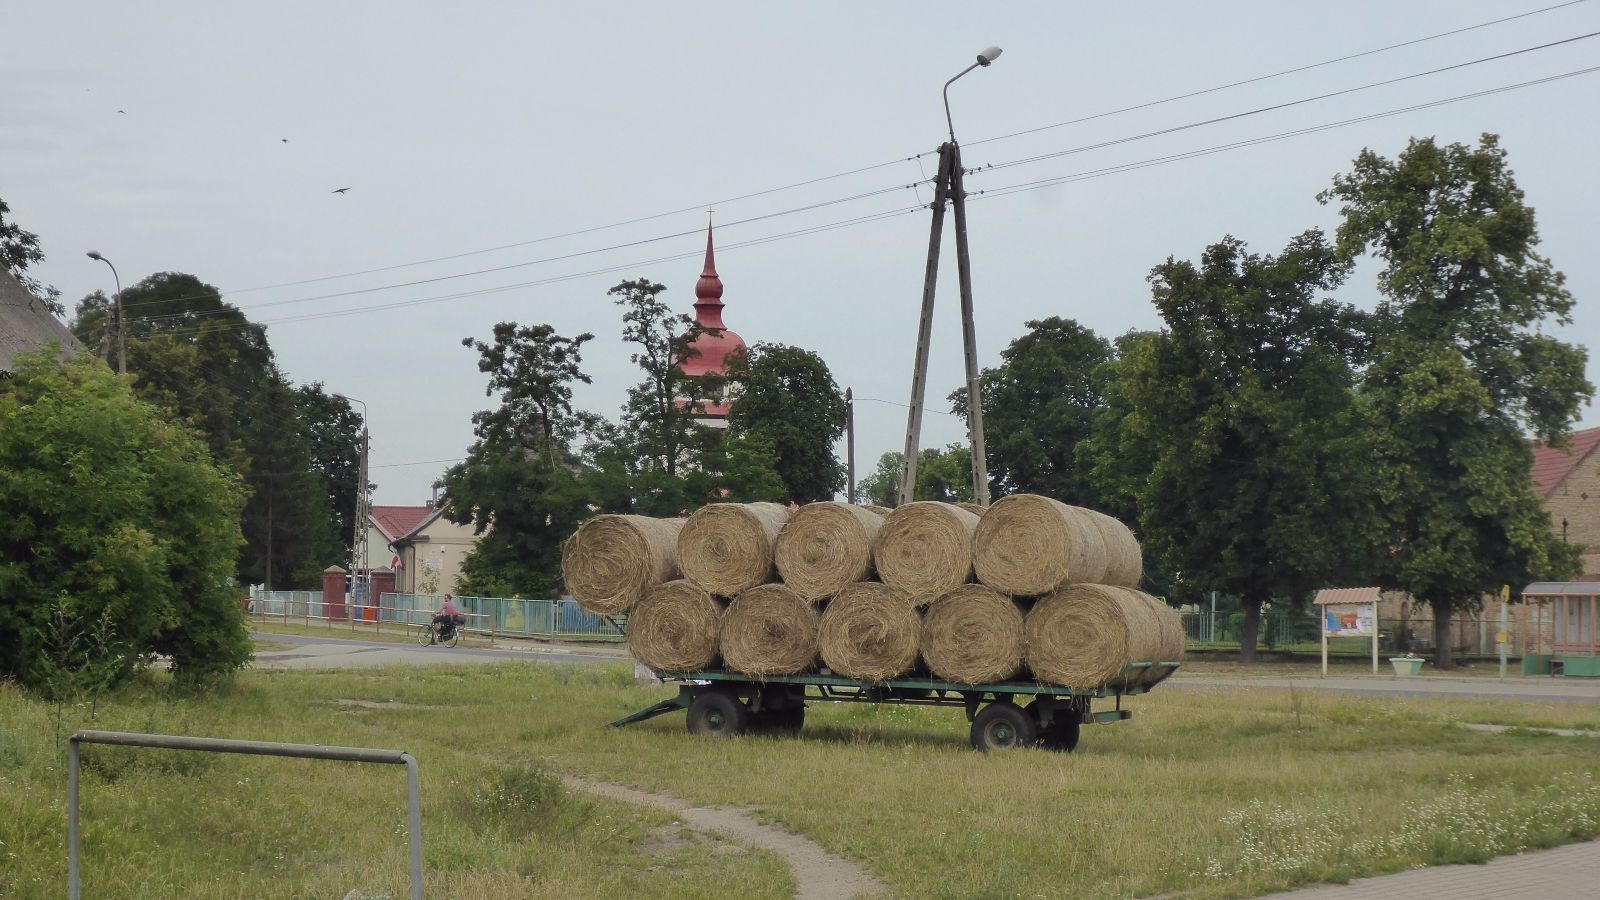 Czarnów - ein polnisches Dorf